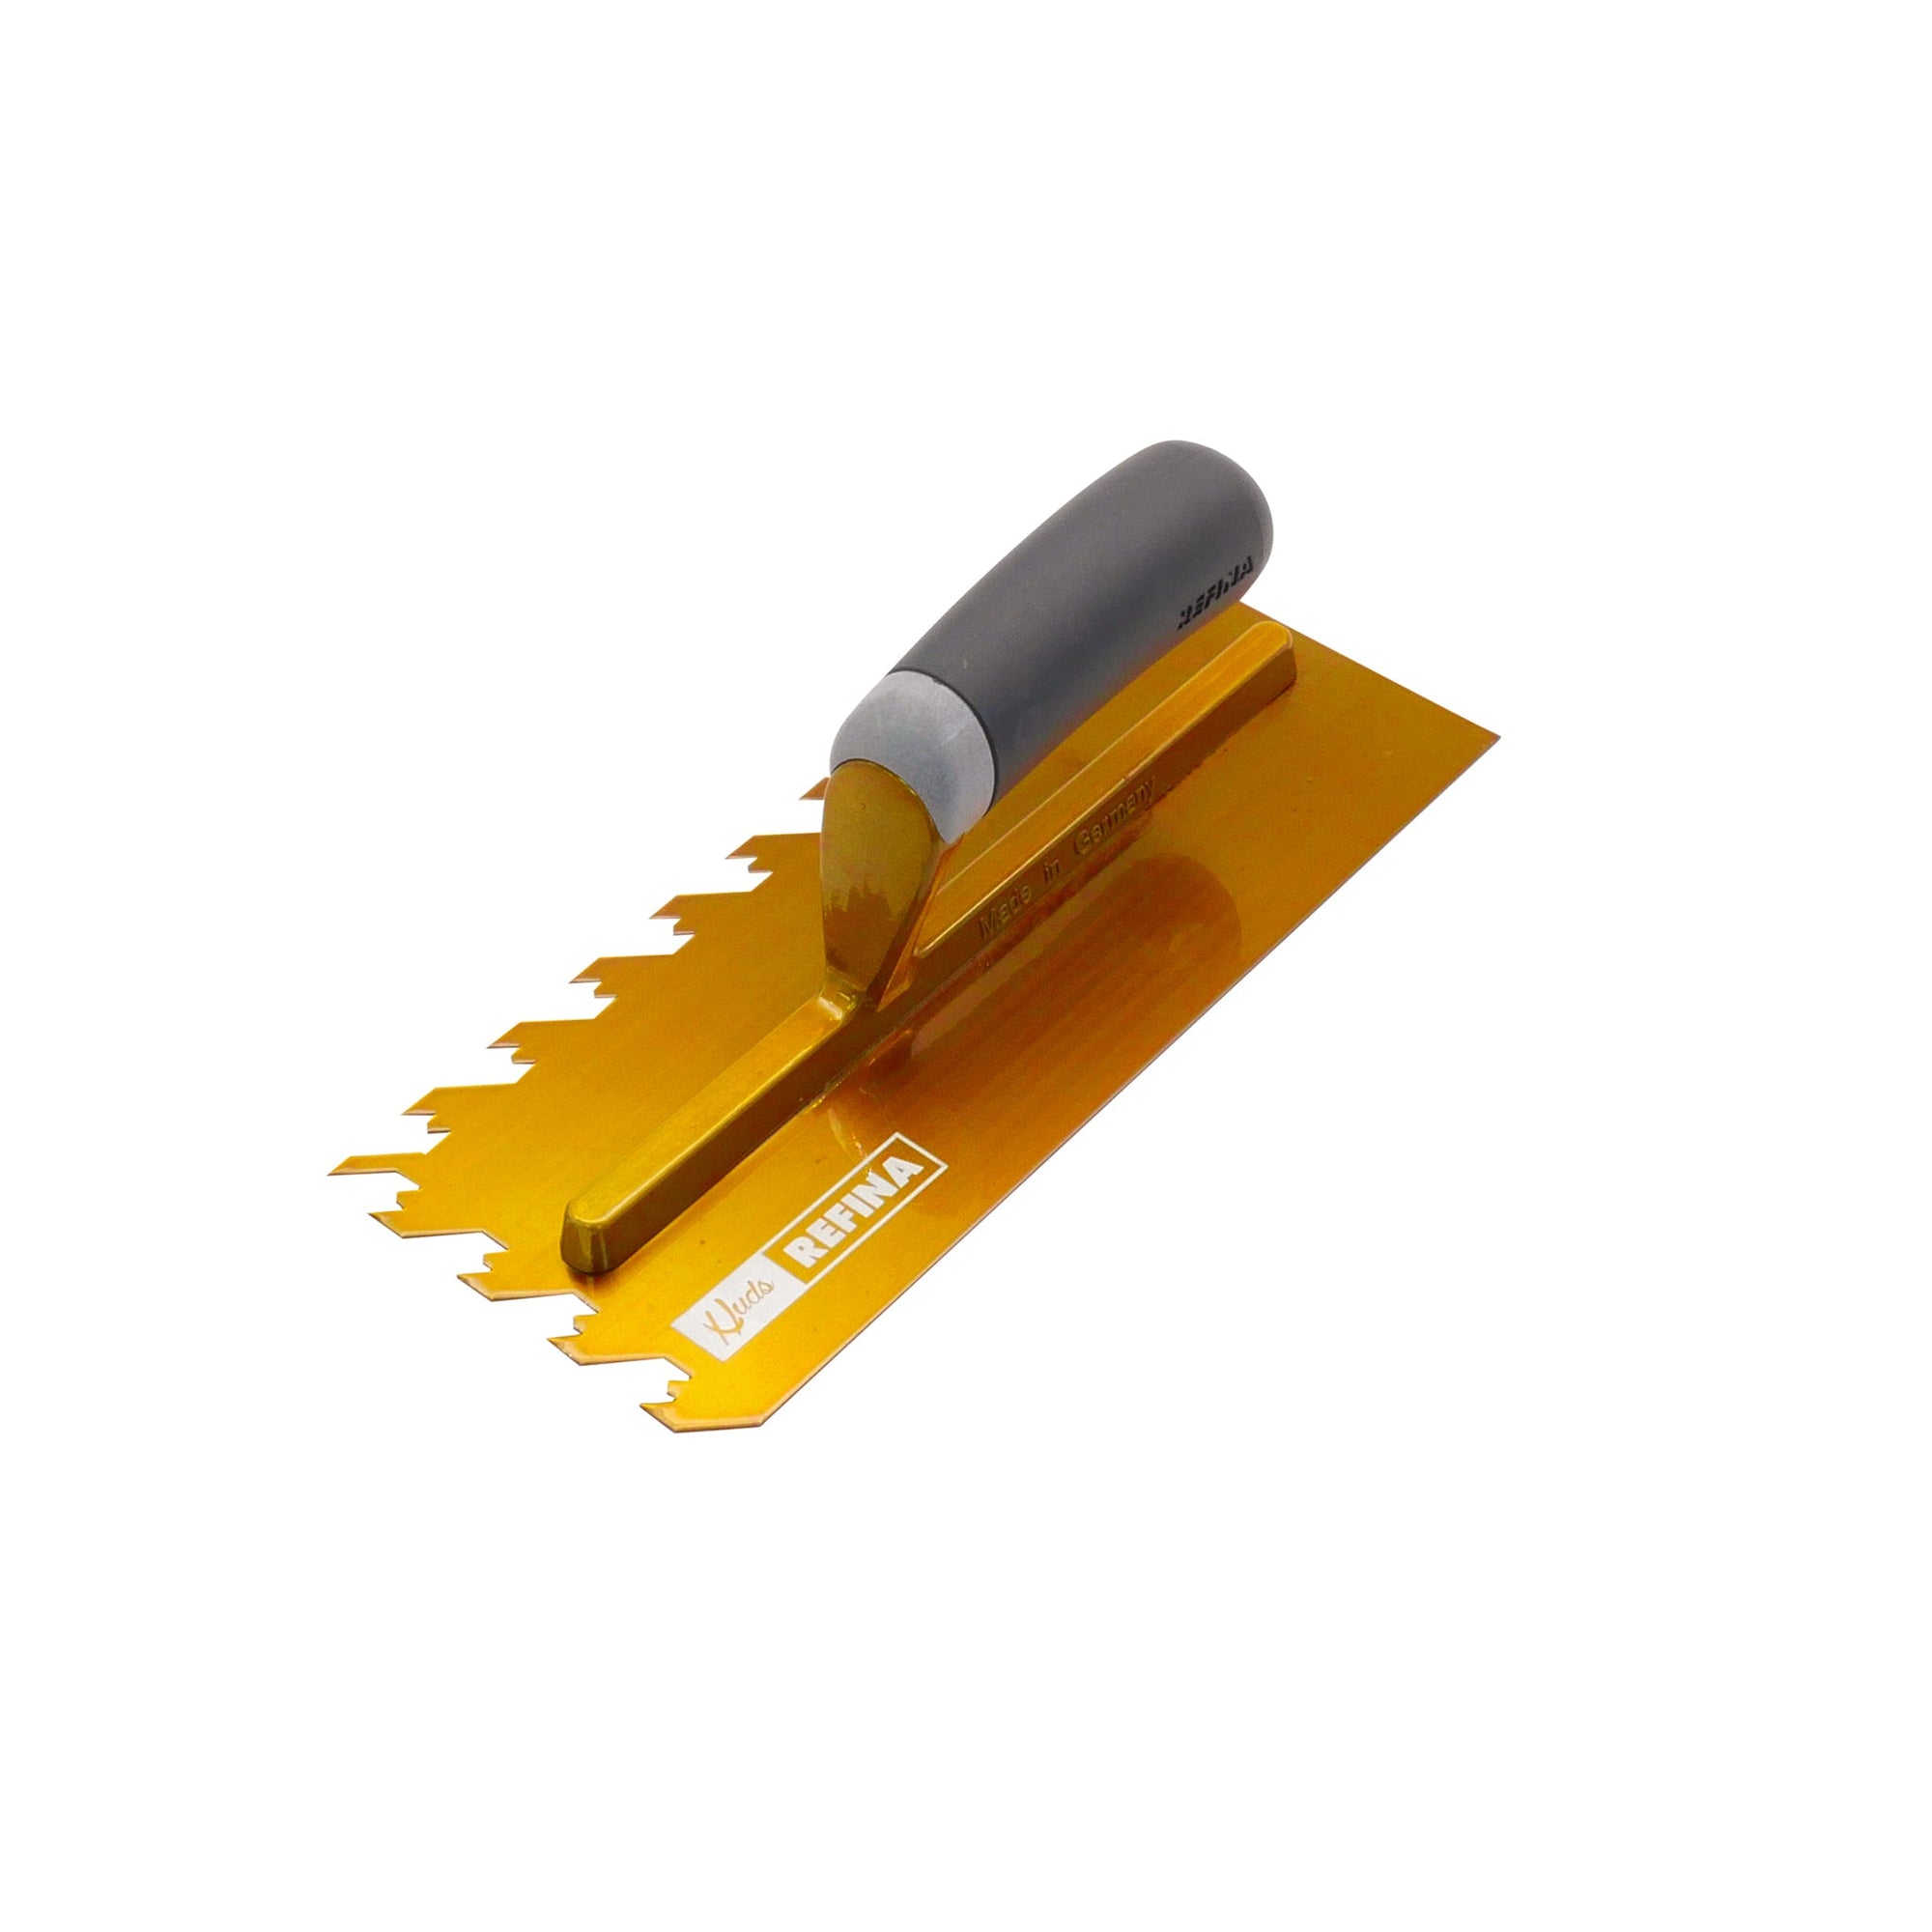 NotchTile Standard Trowel 11" 12mm Gold (280x115x90mm) - Calidad Tools